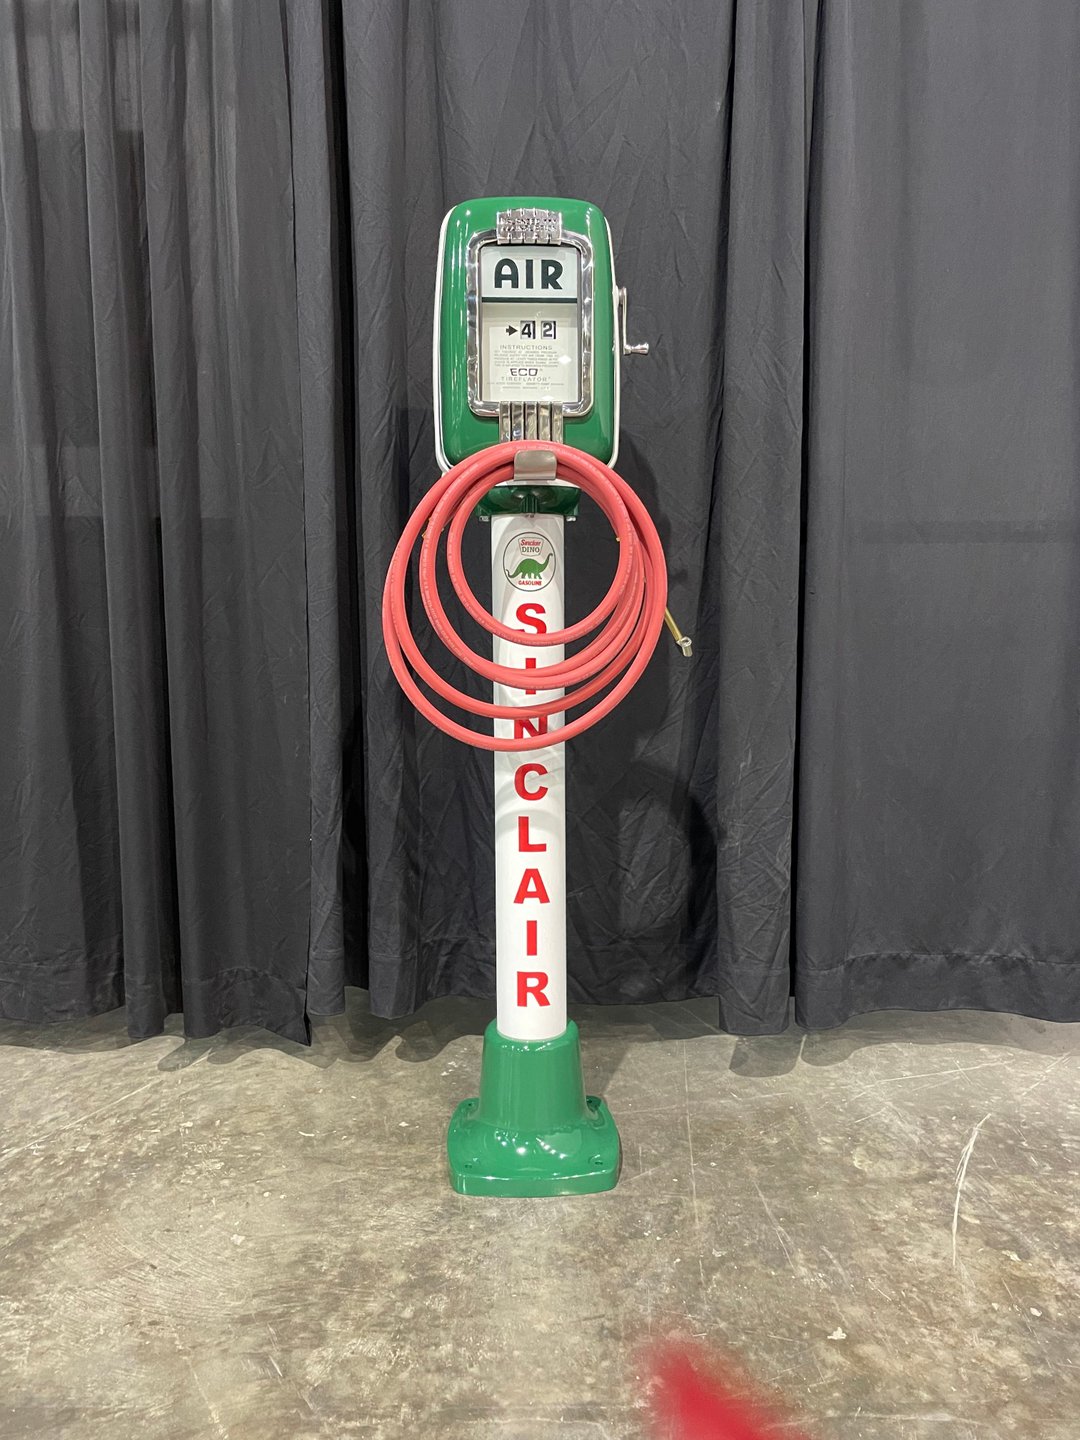 Sinclair air meter